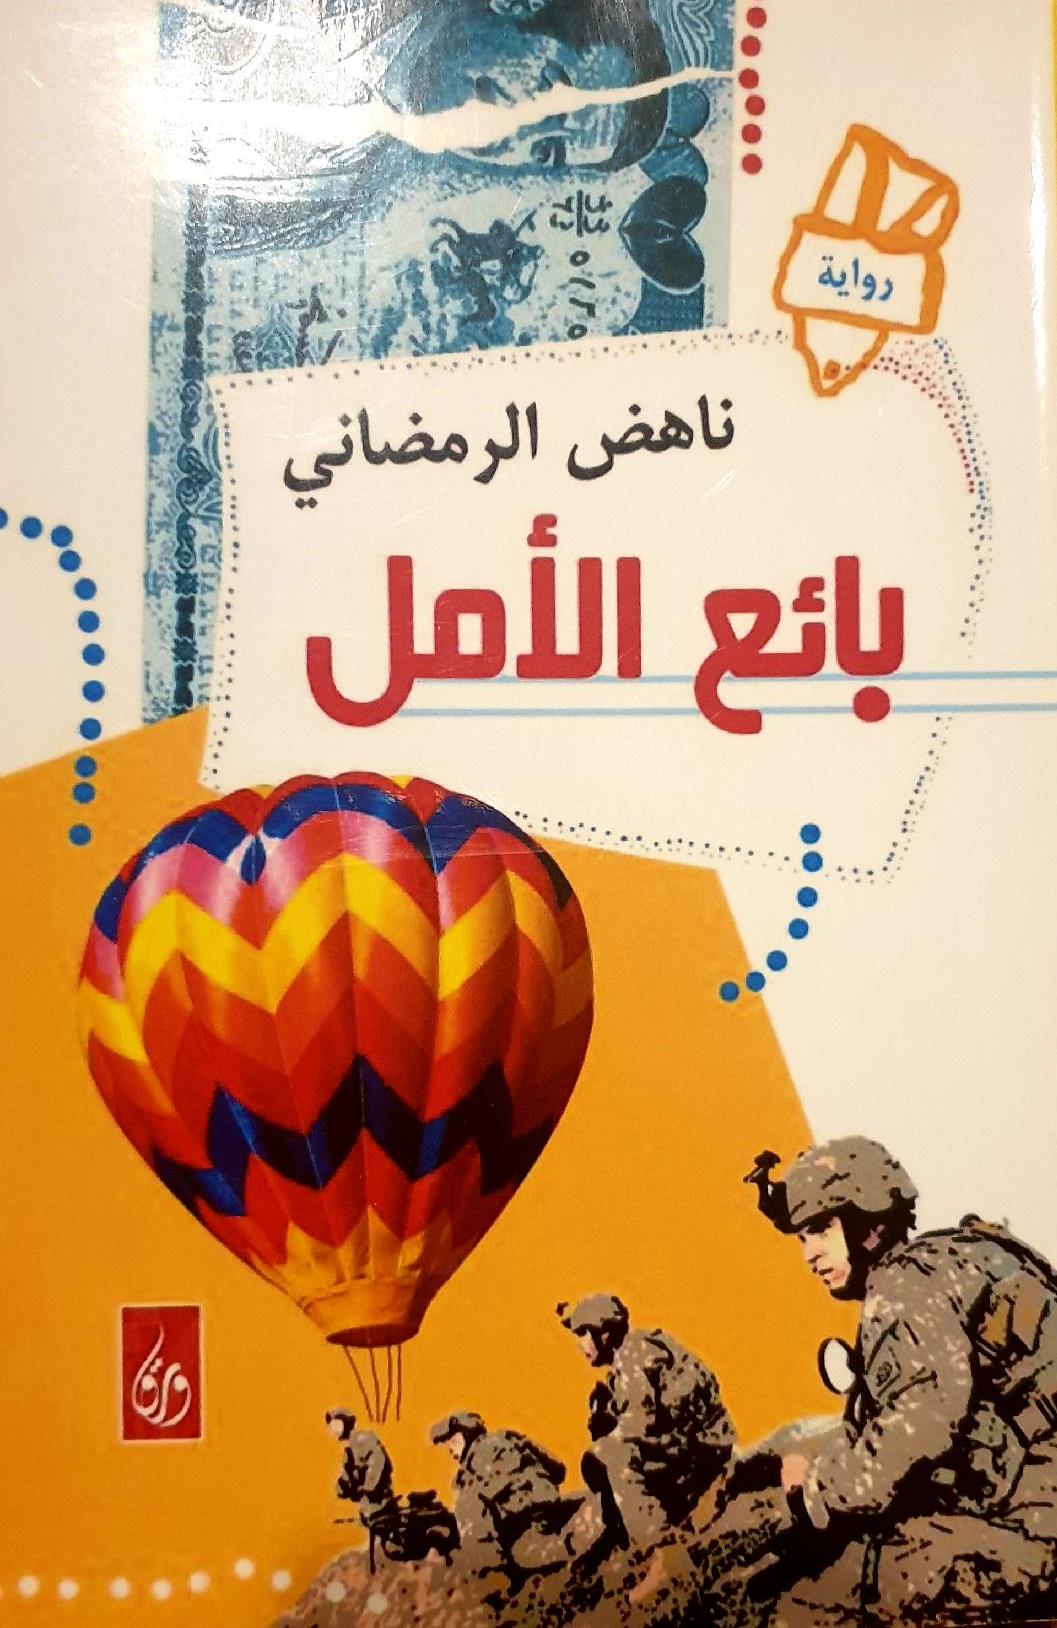 الغلاف العربي لرواية "بائع الأمل" العراقية - للكاتب العراقي الموصلي ناهض الرمضاني. (published in Arabic by Dar Waraq)